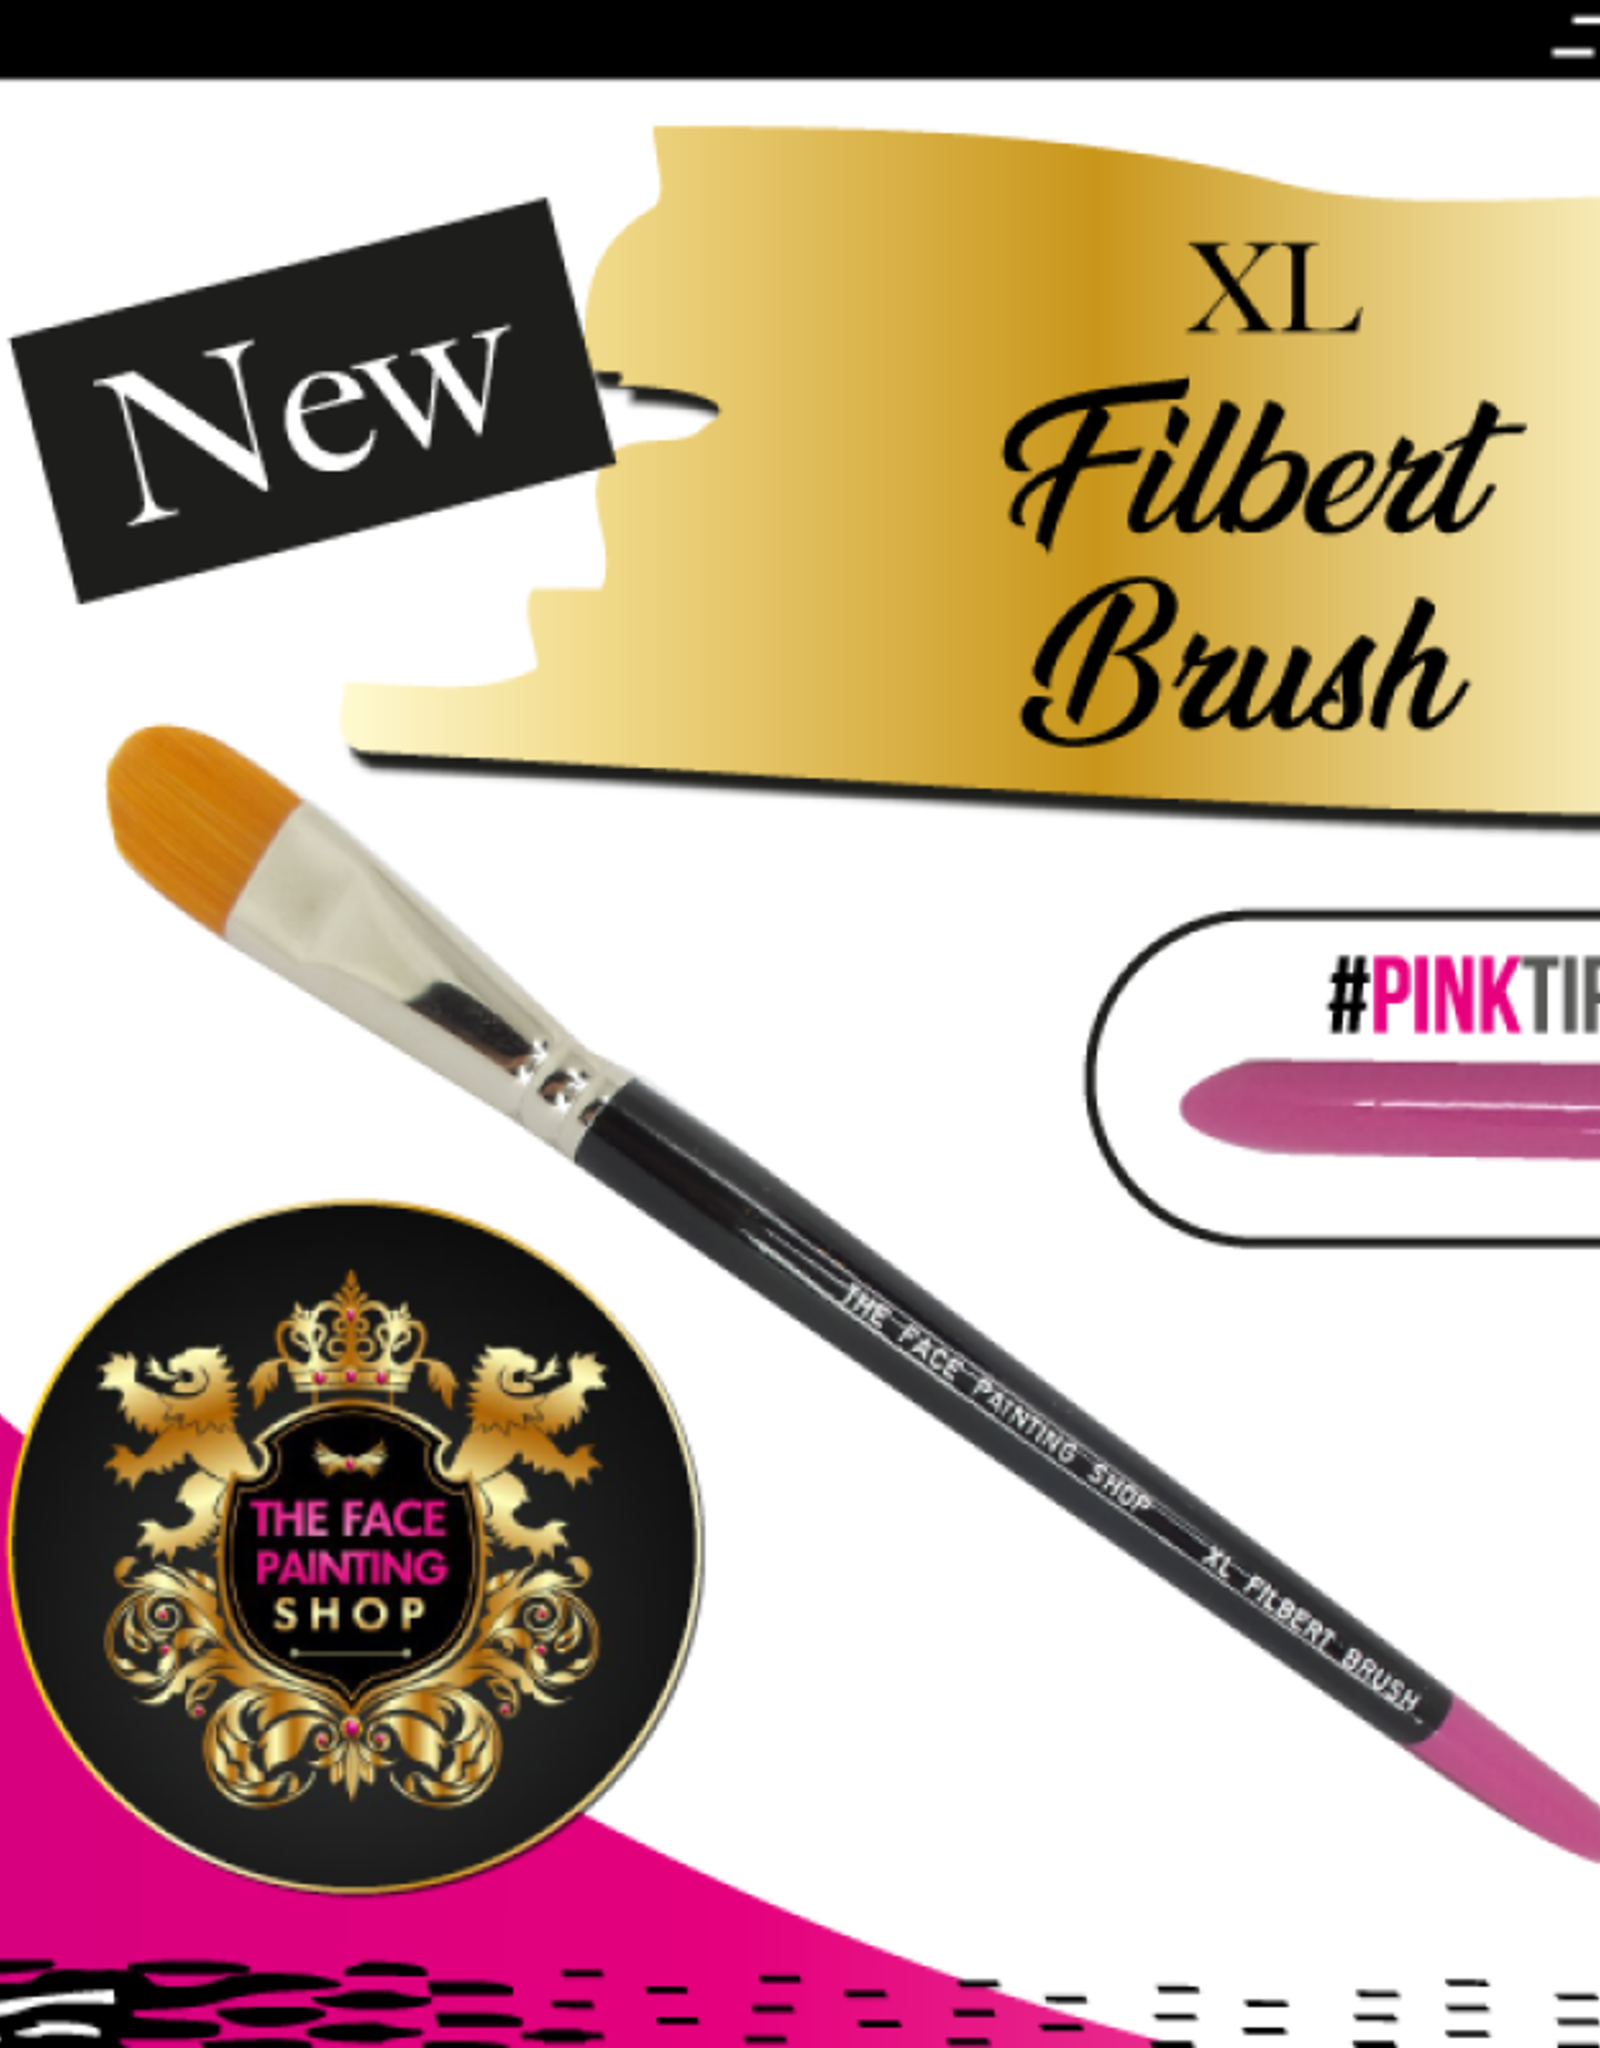 Pink Tips Pink Tips Brush - XL filbert brush